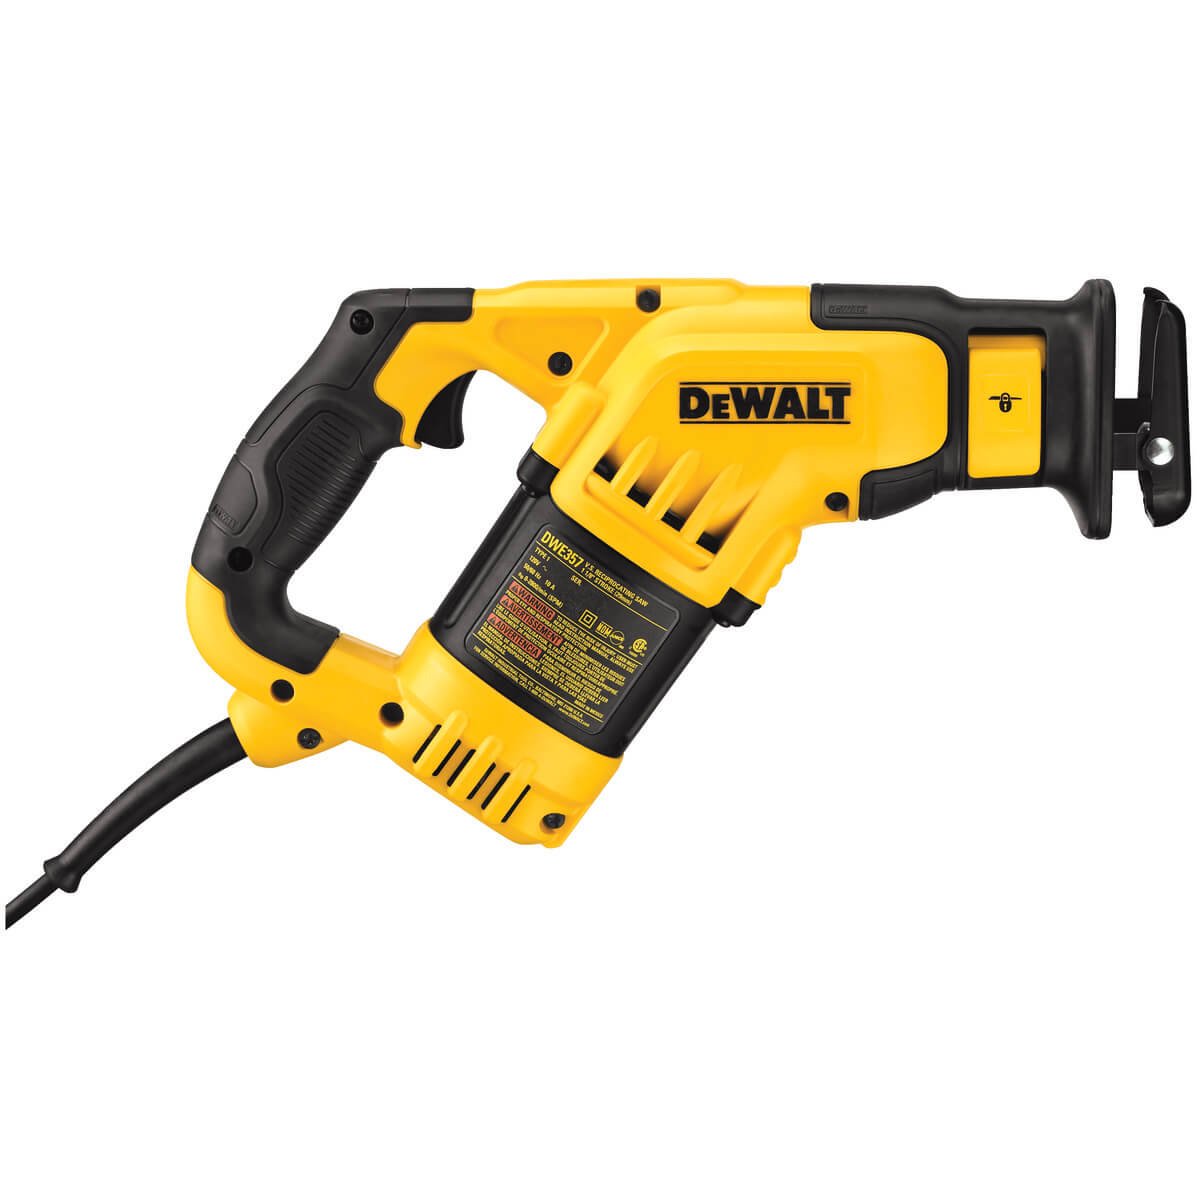 DeWalt dwe357 - 12 Amp Compact Reciprocating Saw